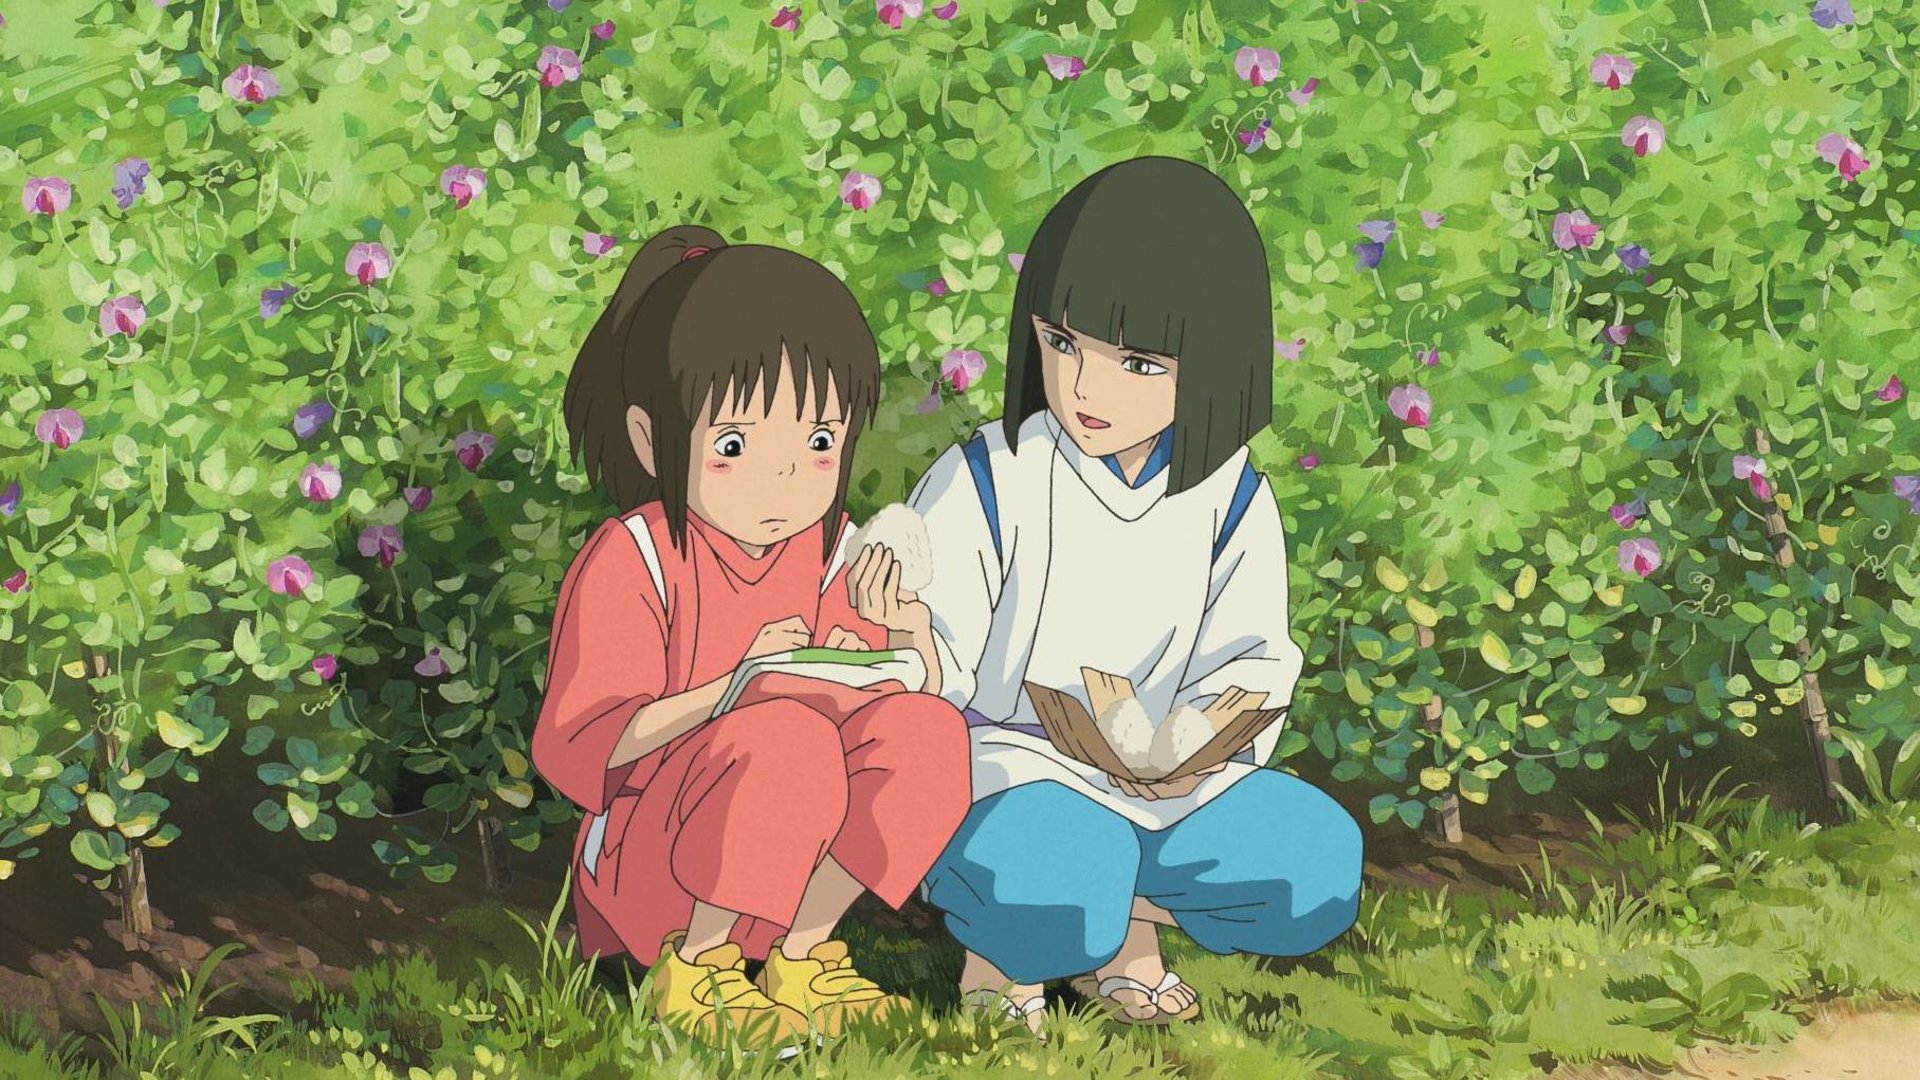 #Trotz absoluter Geheimhaltung: Neuer Anime von Studio Ghibli bricht Kino-Rekord